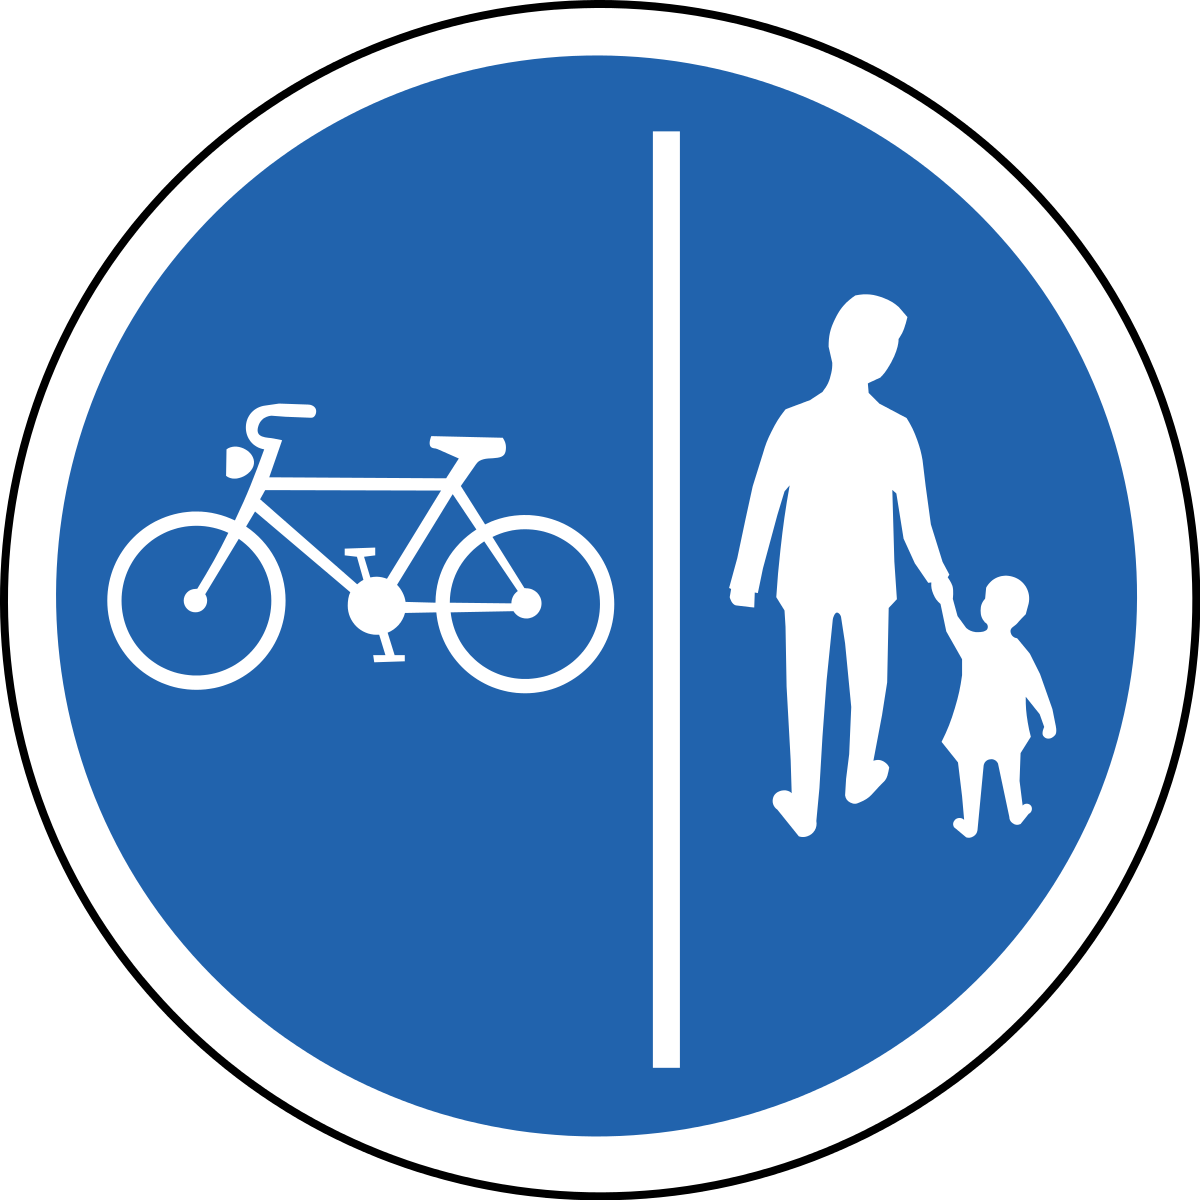 Велосипедная дорожка мопеды. 4.4.1 Велосипедная дорожка. Велосипедная дорожка дорожный знак. Зак велосипедноц дорожки. Дорожные знаки для детей велосипедная дорожка.